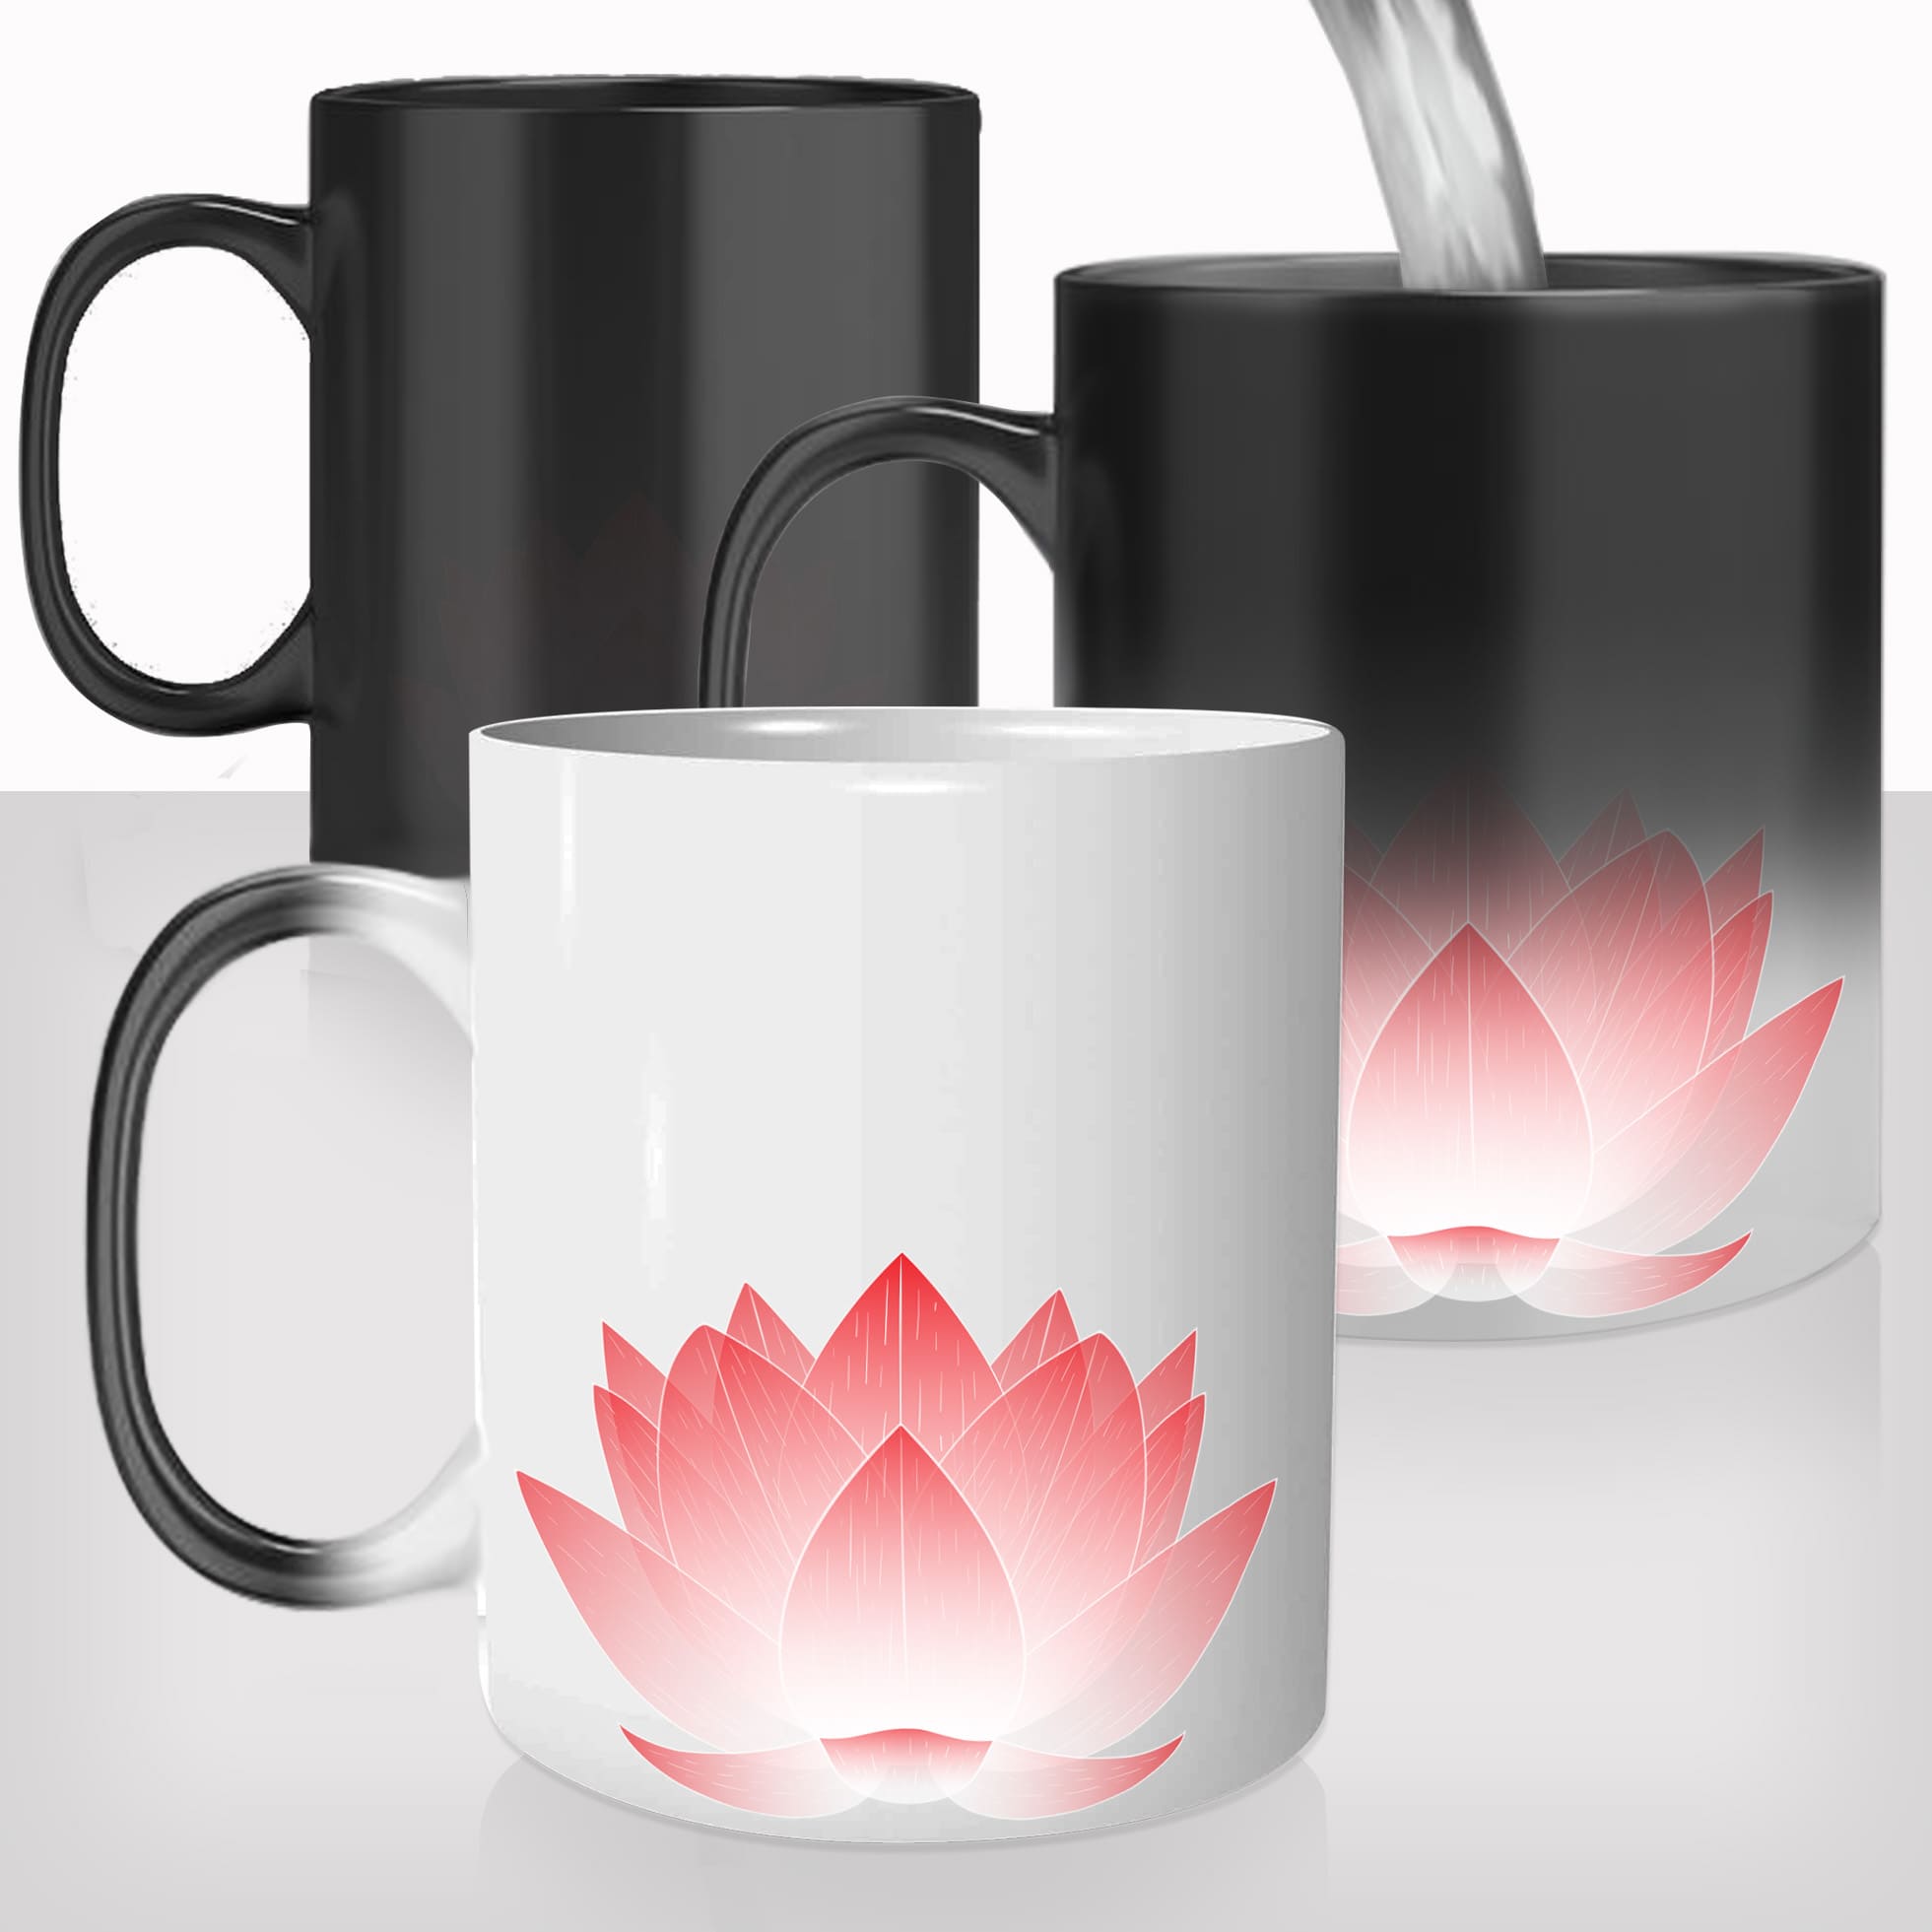 mug-magique-tasse-magic-thermo-reactif-fleur-de-lotus-nature-dessin-illustartion-photo-personnalisable-offrir-en-cadeau-original-fun-femme